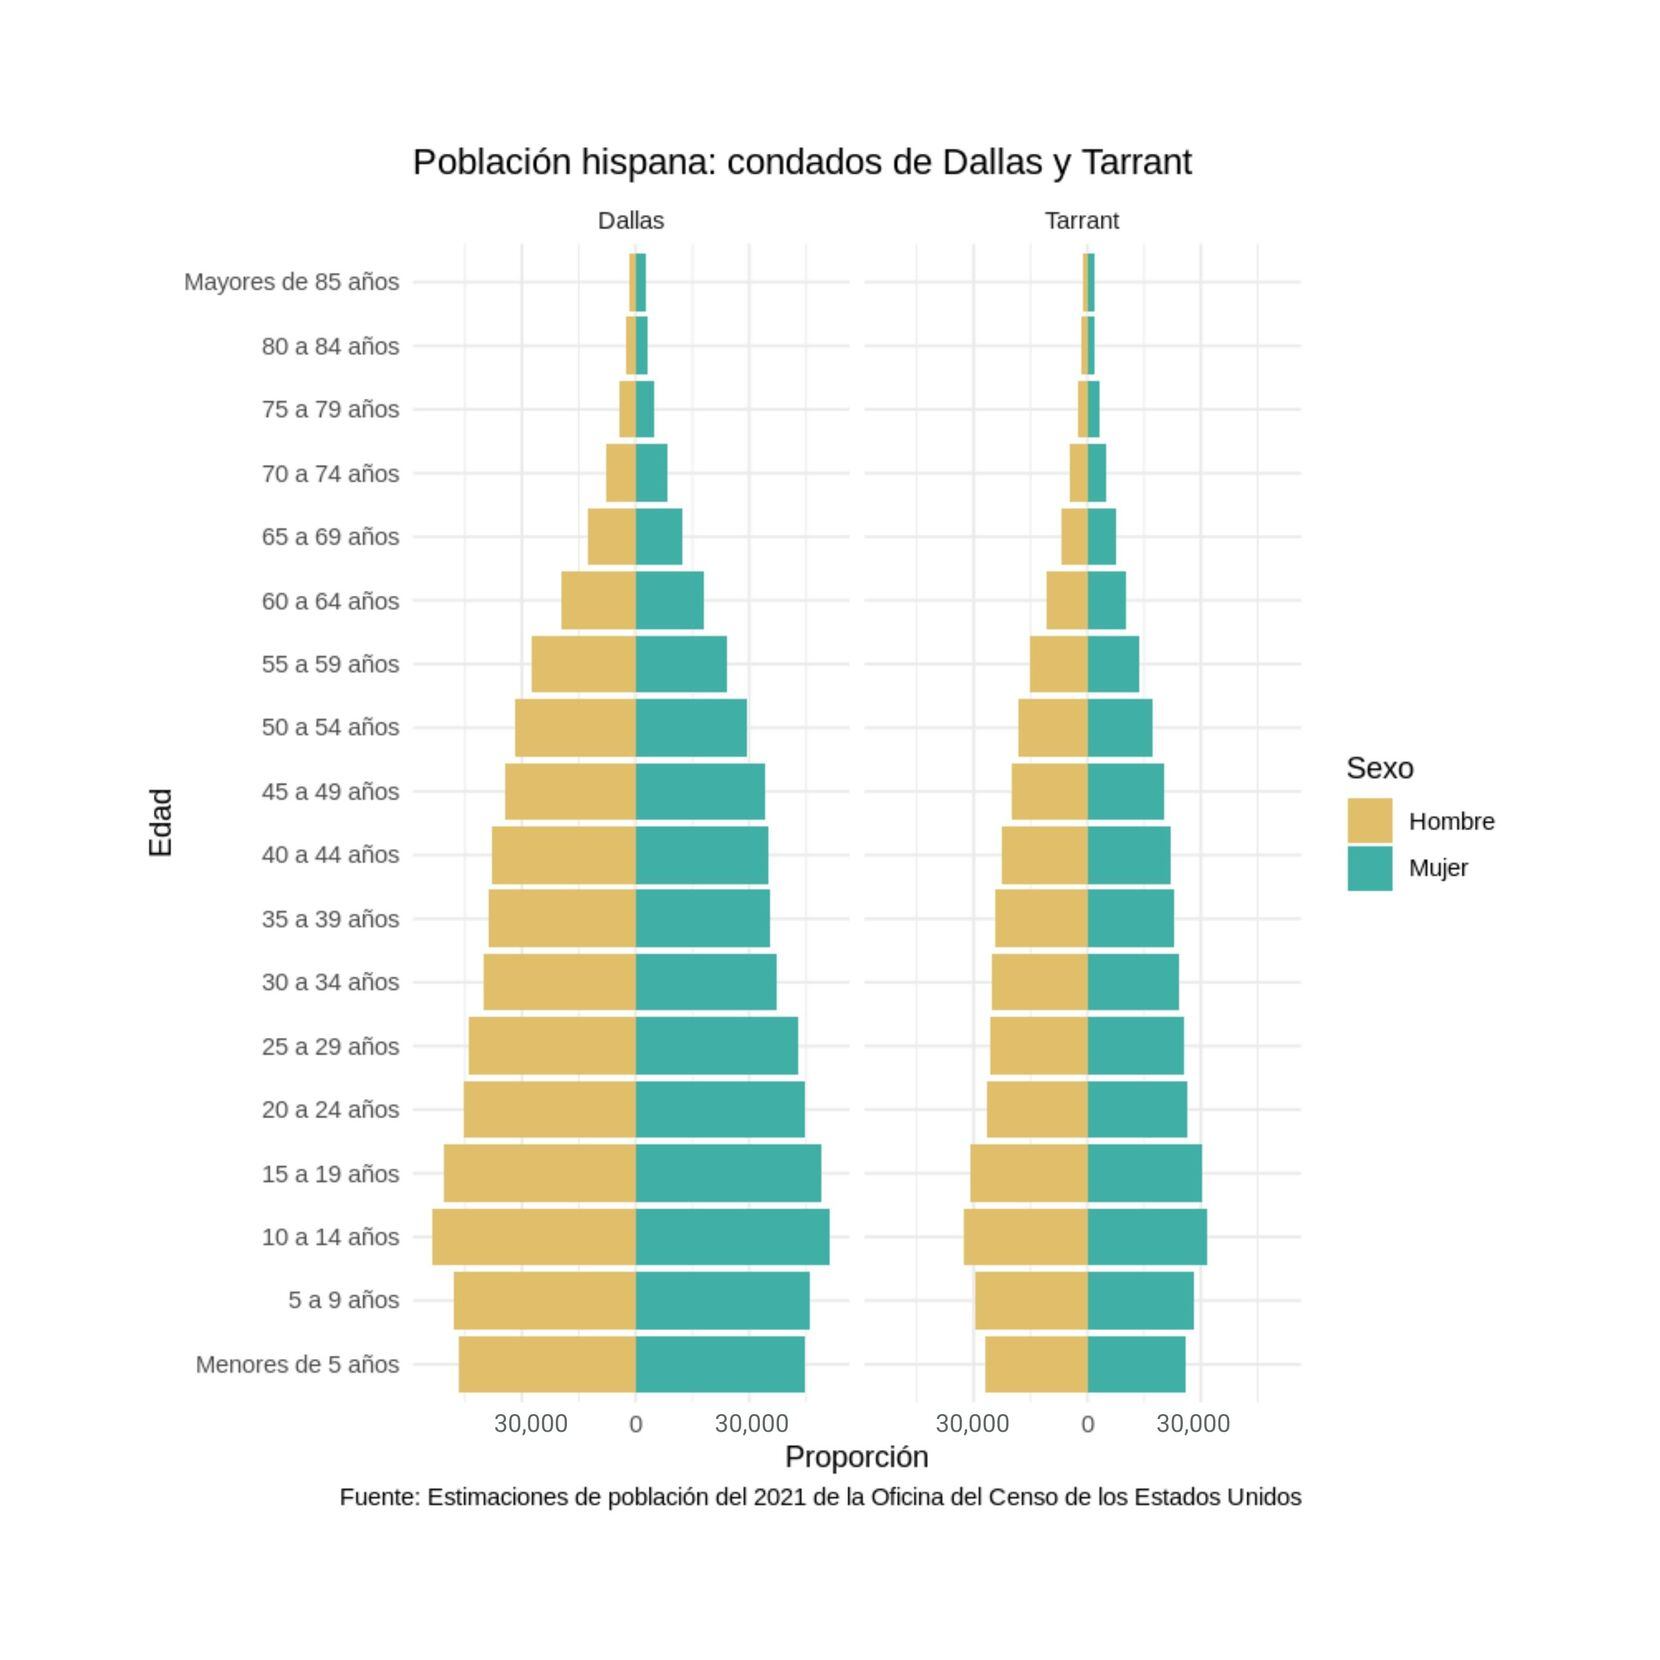 Pirámide poblacional comparando los condados de Dallas y Tarrant en su población hispana.